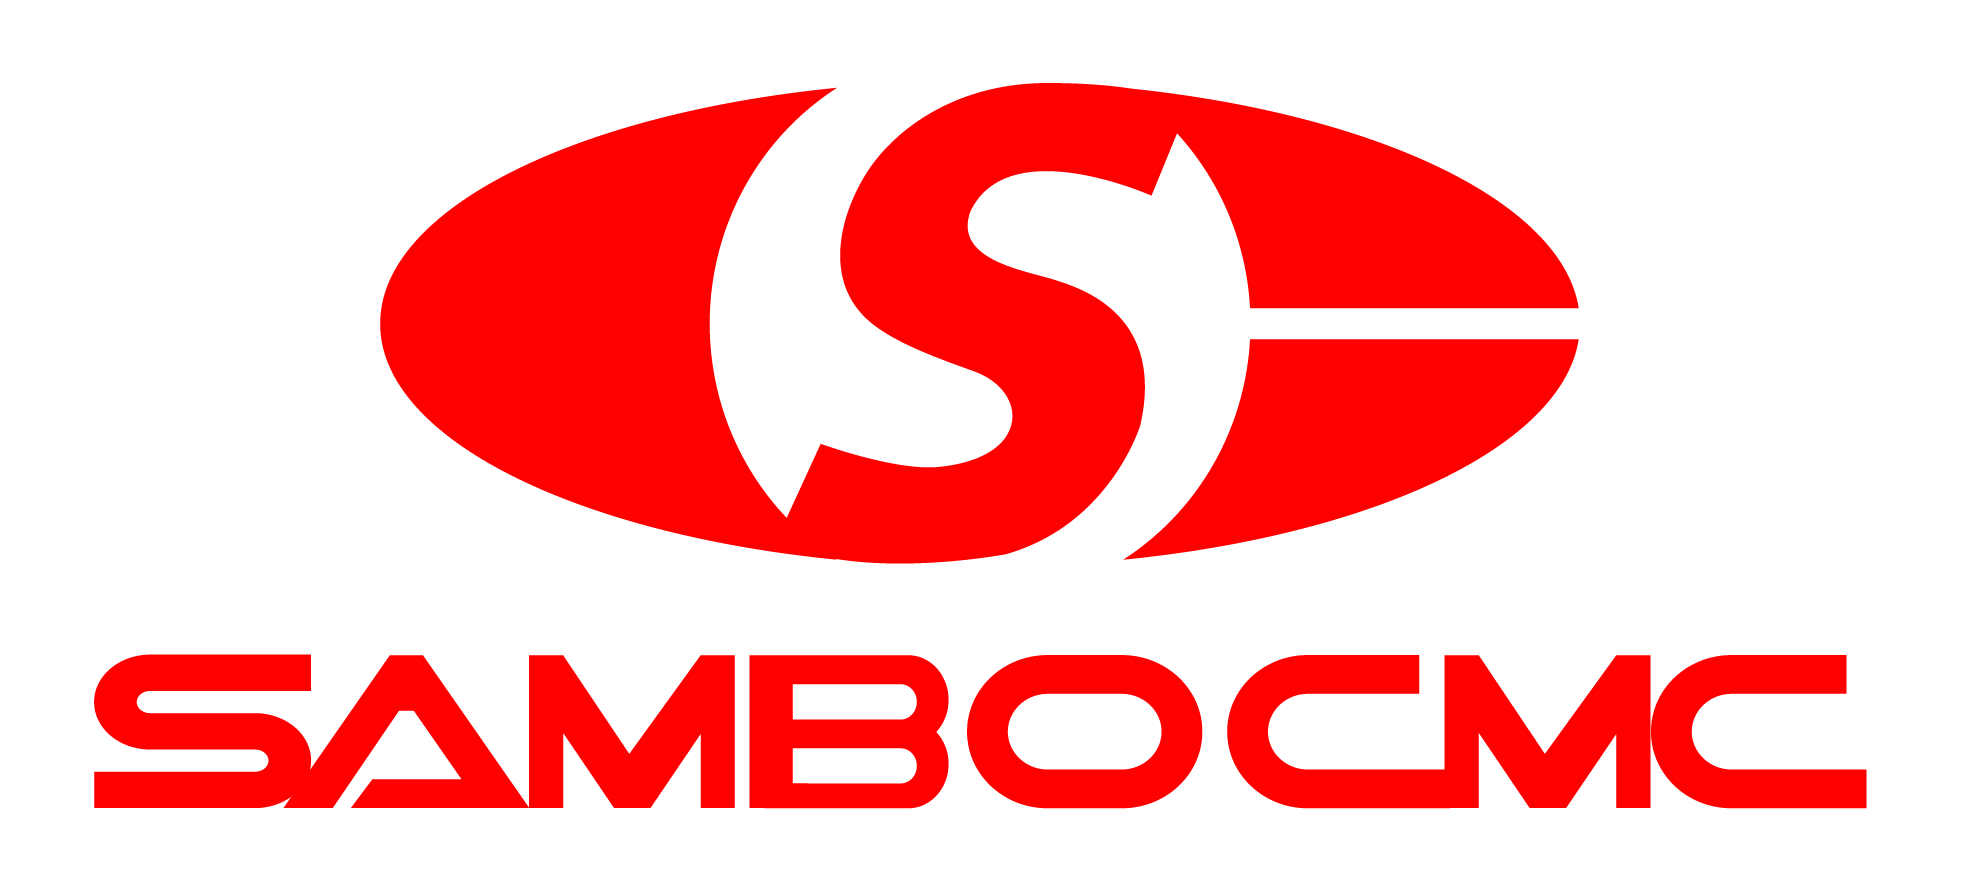 SAMBO